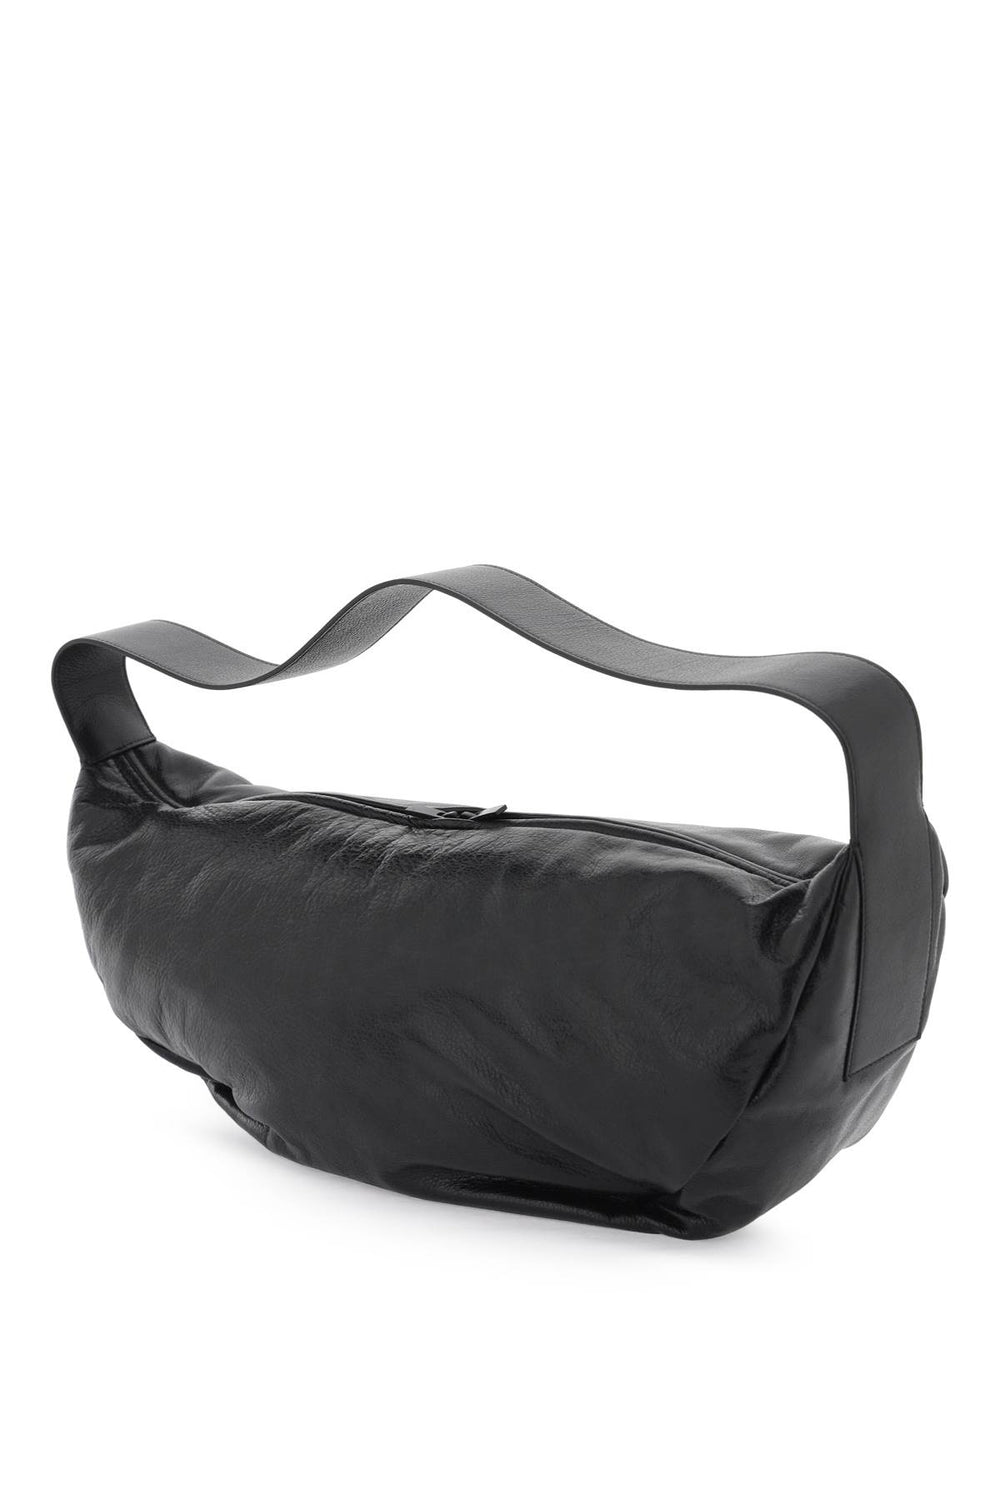 shell shoulder bag with strap-1